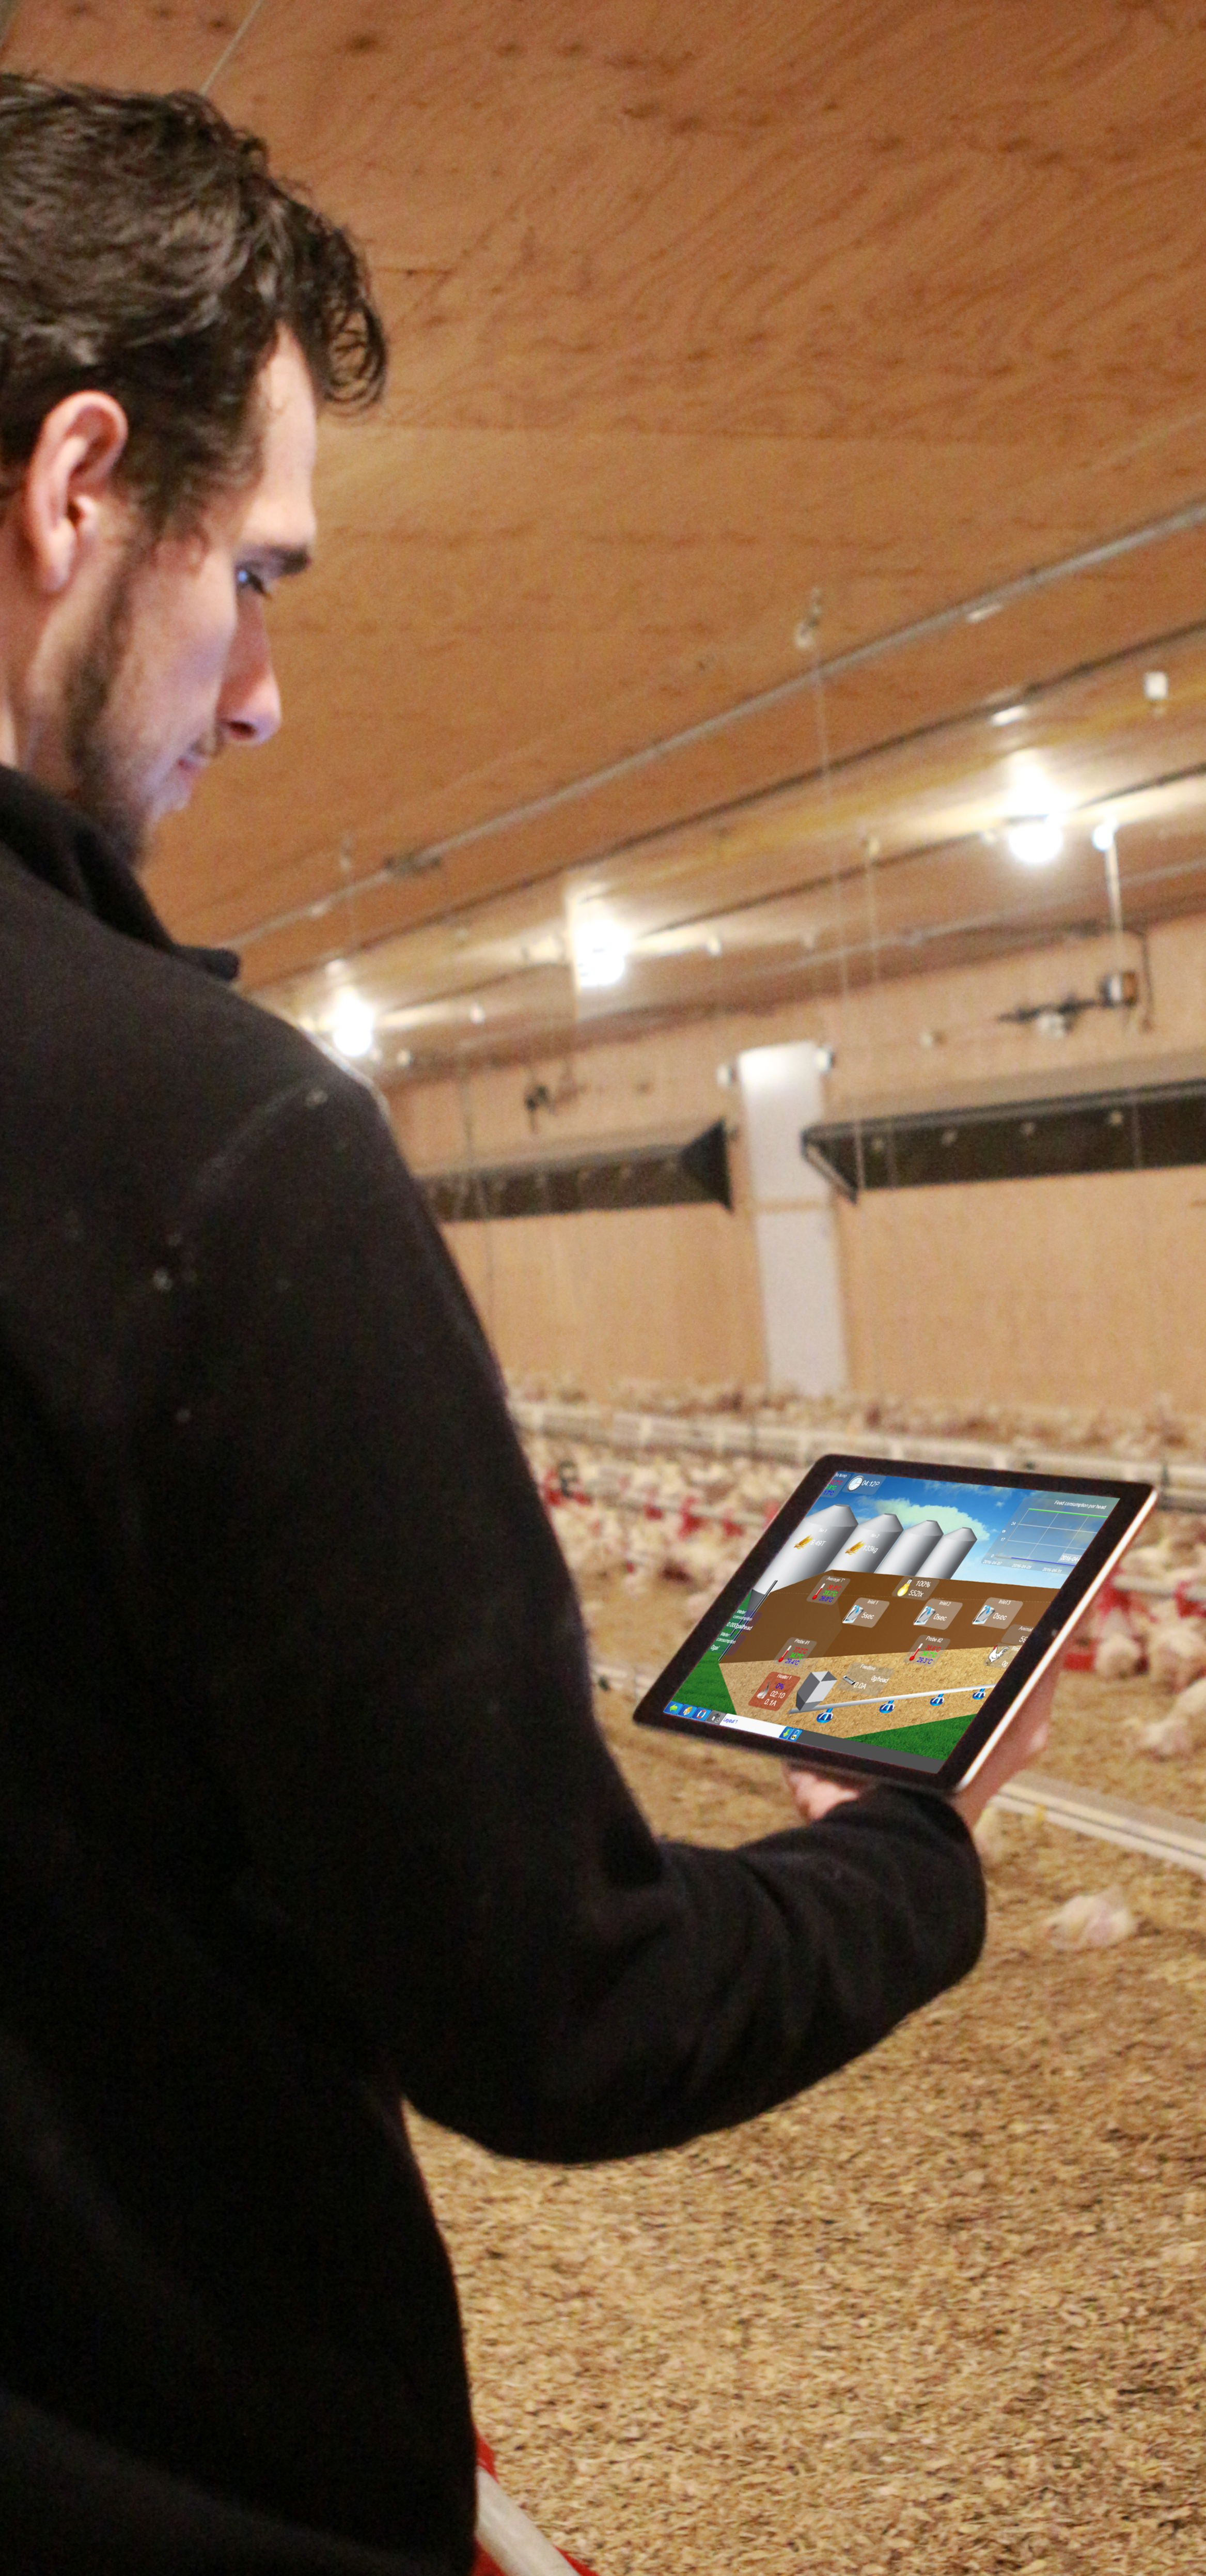 Gallinero - Visión general de la granja MAXIMUS en iPad